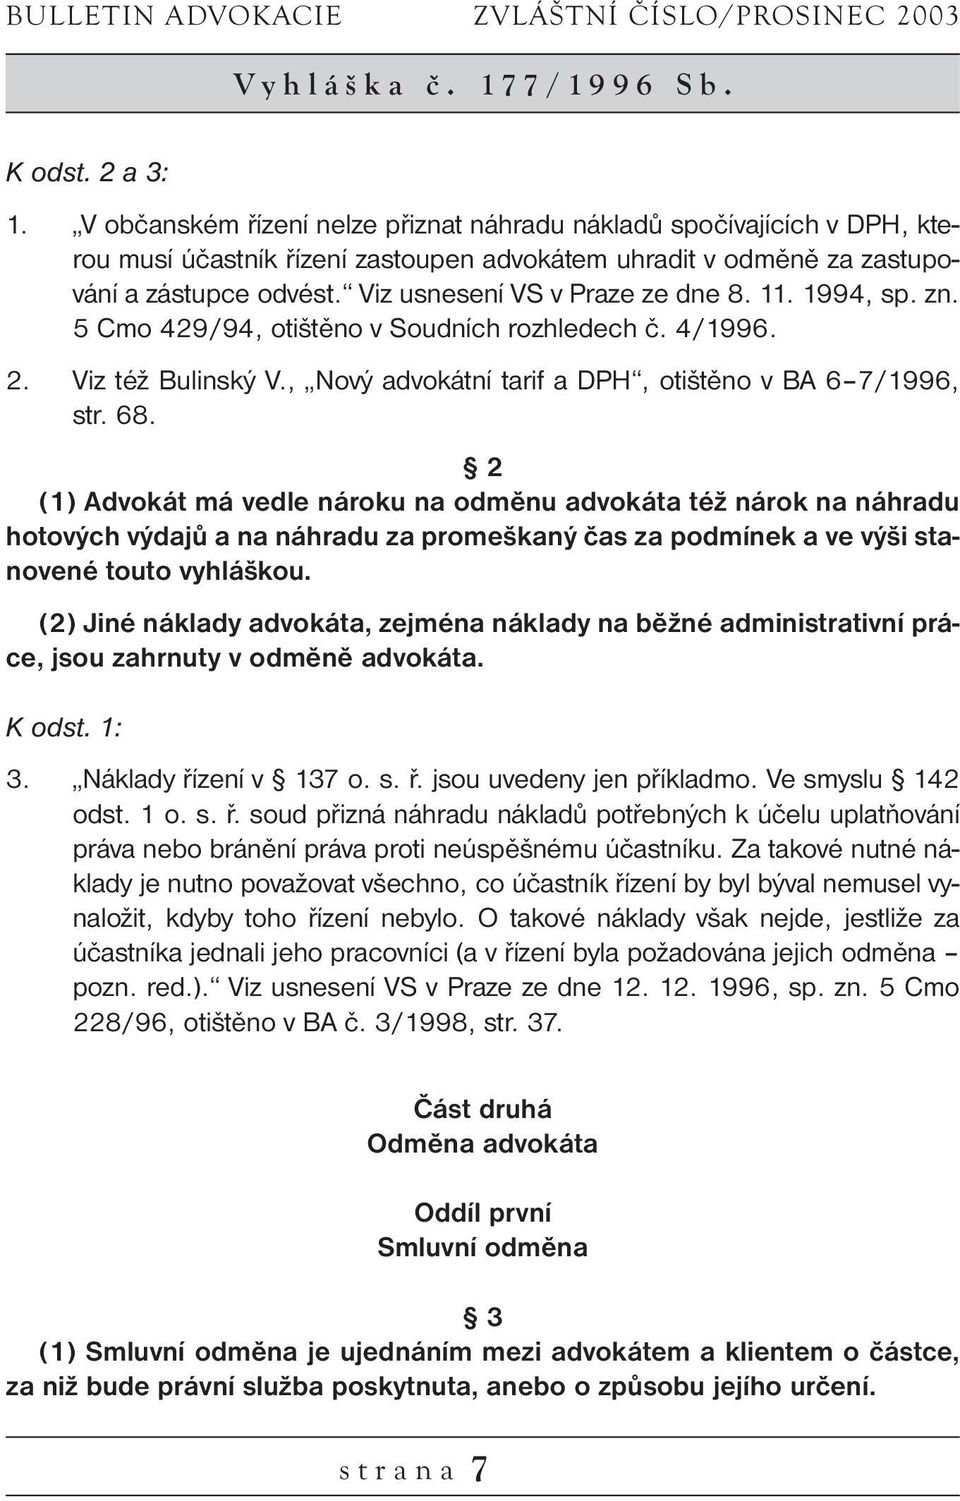 Viz usnesení VS v Praze ze dne 8. 11. 1994, sp. zn. 5 Cmo 429/94, otištěno v Soudních rozhledech č. 4/1996. 2. Viz též Bulinský V., Nový advokátní tarif a DPH, otištěno v BA 6 7/1996, str. 68.